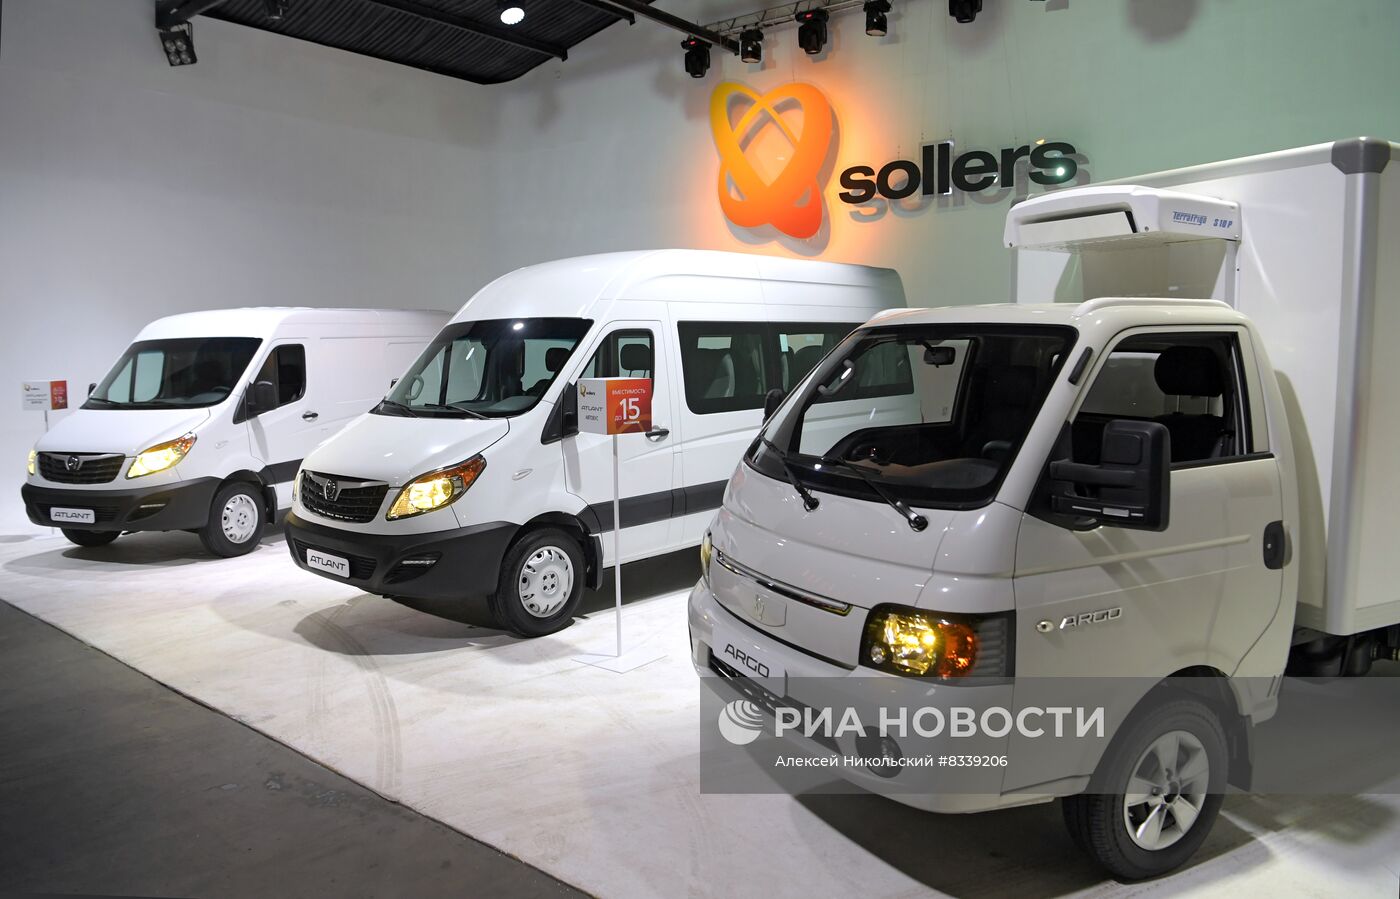 Презентация автомобилей "Соллерс" в Москве 